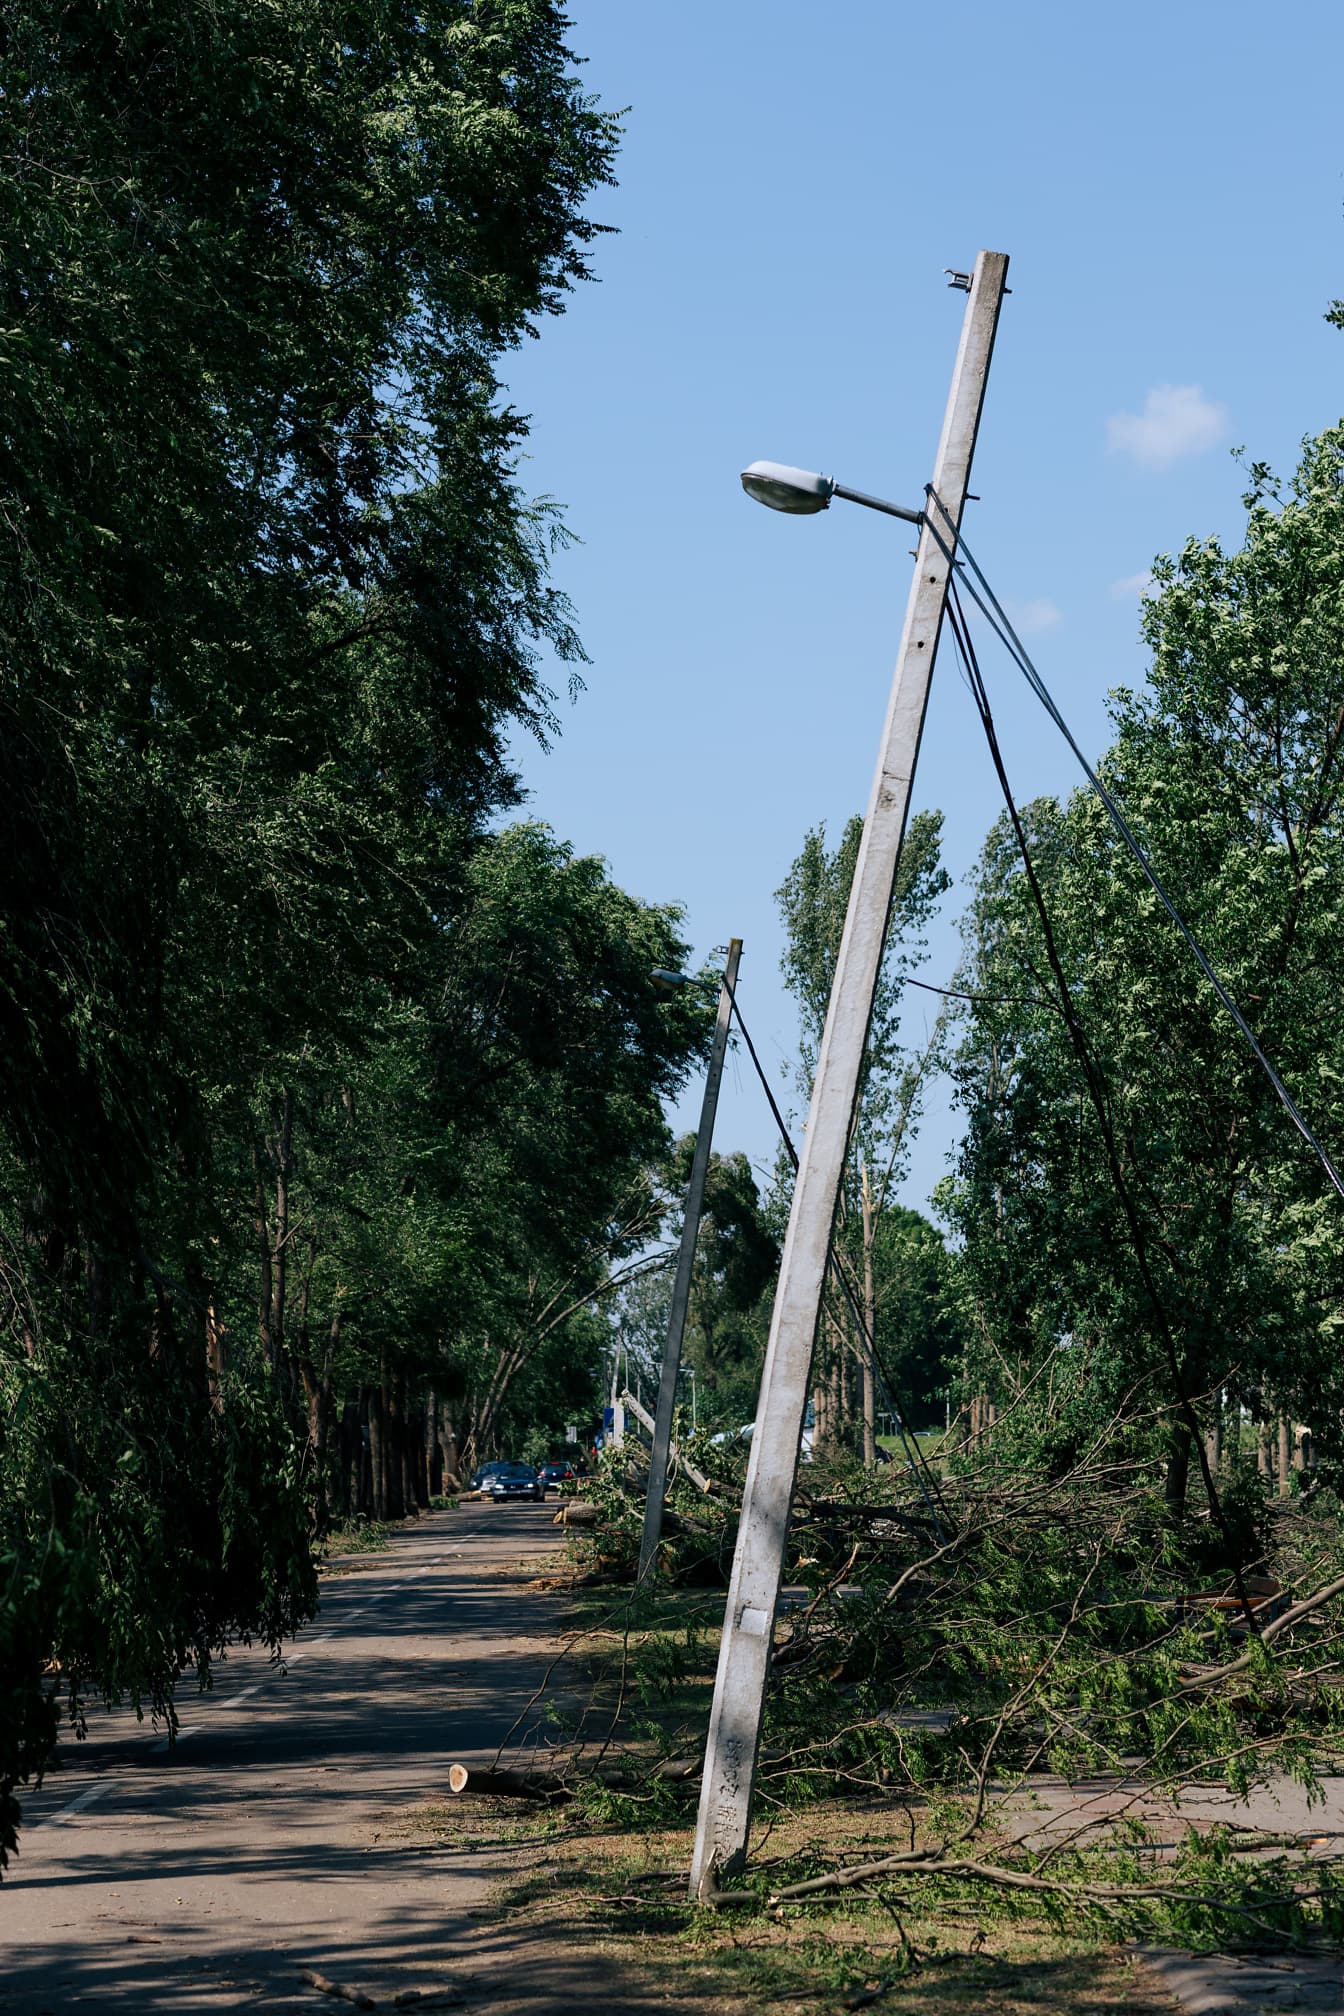 Λυγισμένοι τσιμεντένιοι τηλεφωνικοί στύλοι στο δρόμο μετά από ισχυρό άνεμο